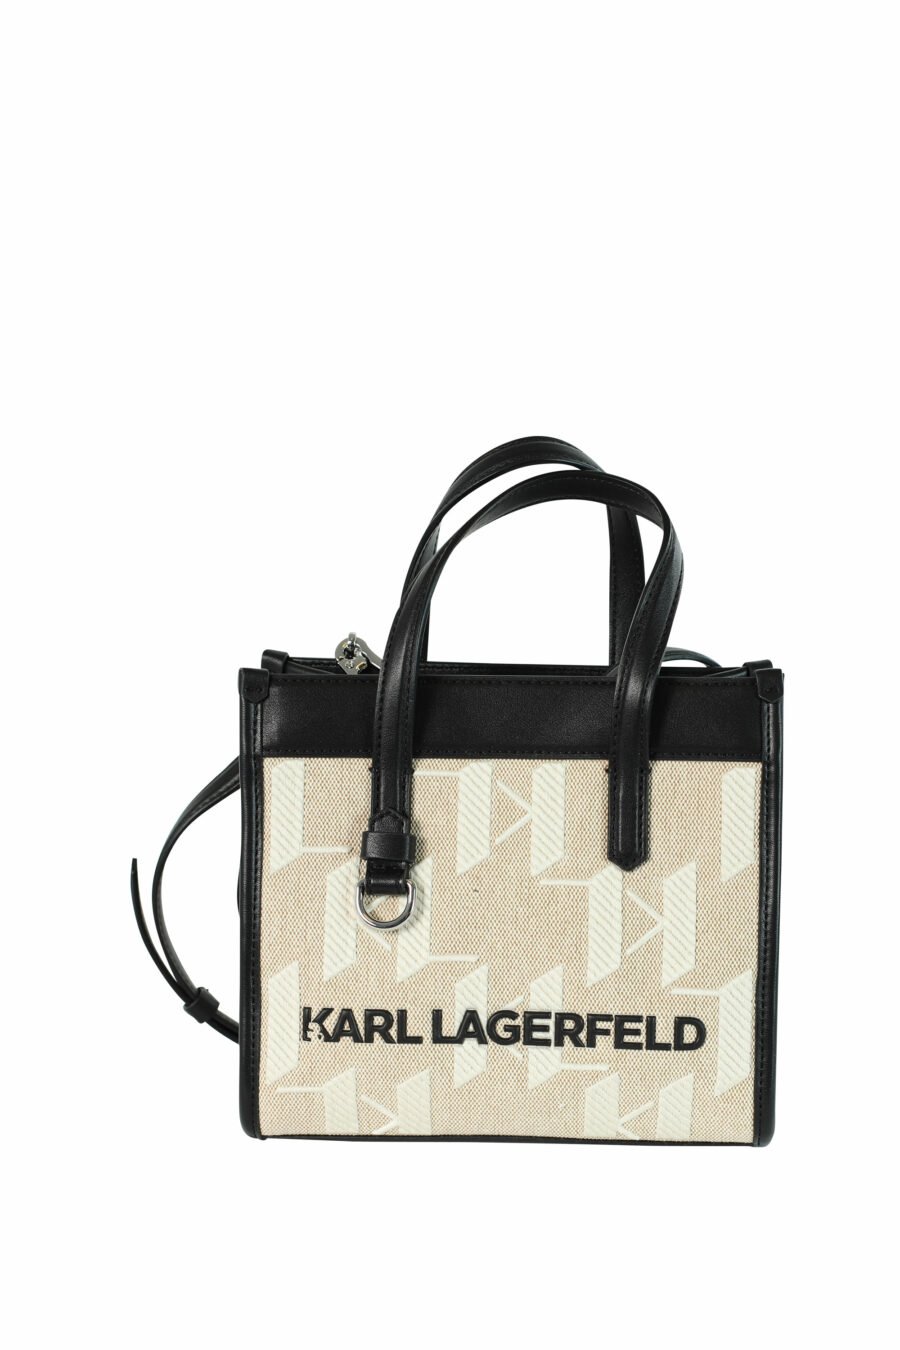 Beigefarbene Mini-Tasche mit weißem Monogramm und schwarzen Details - 8720092900058